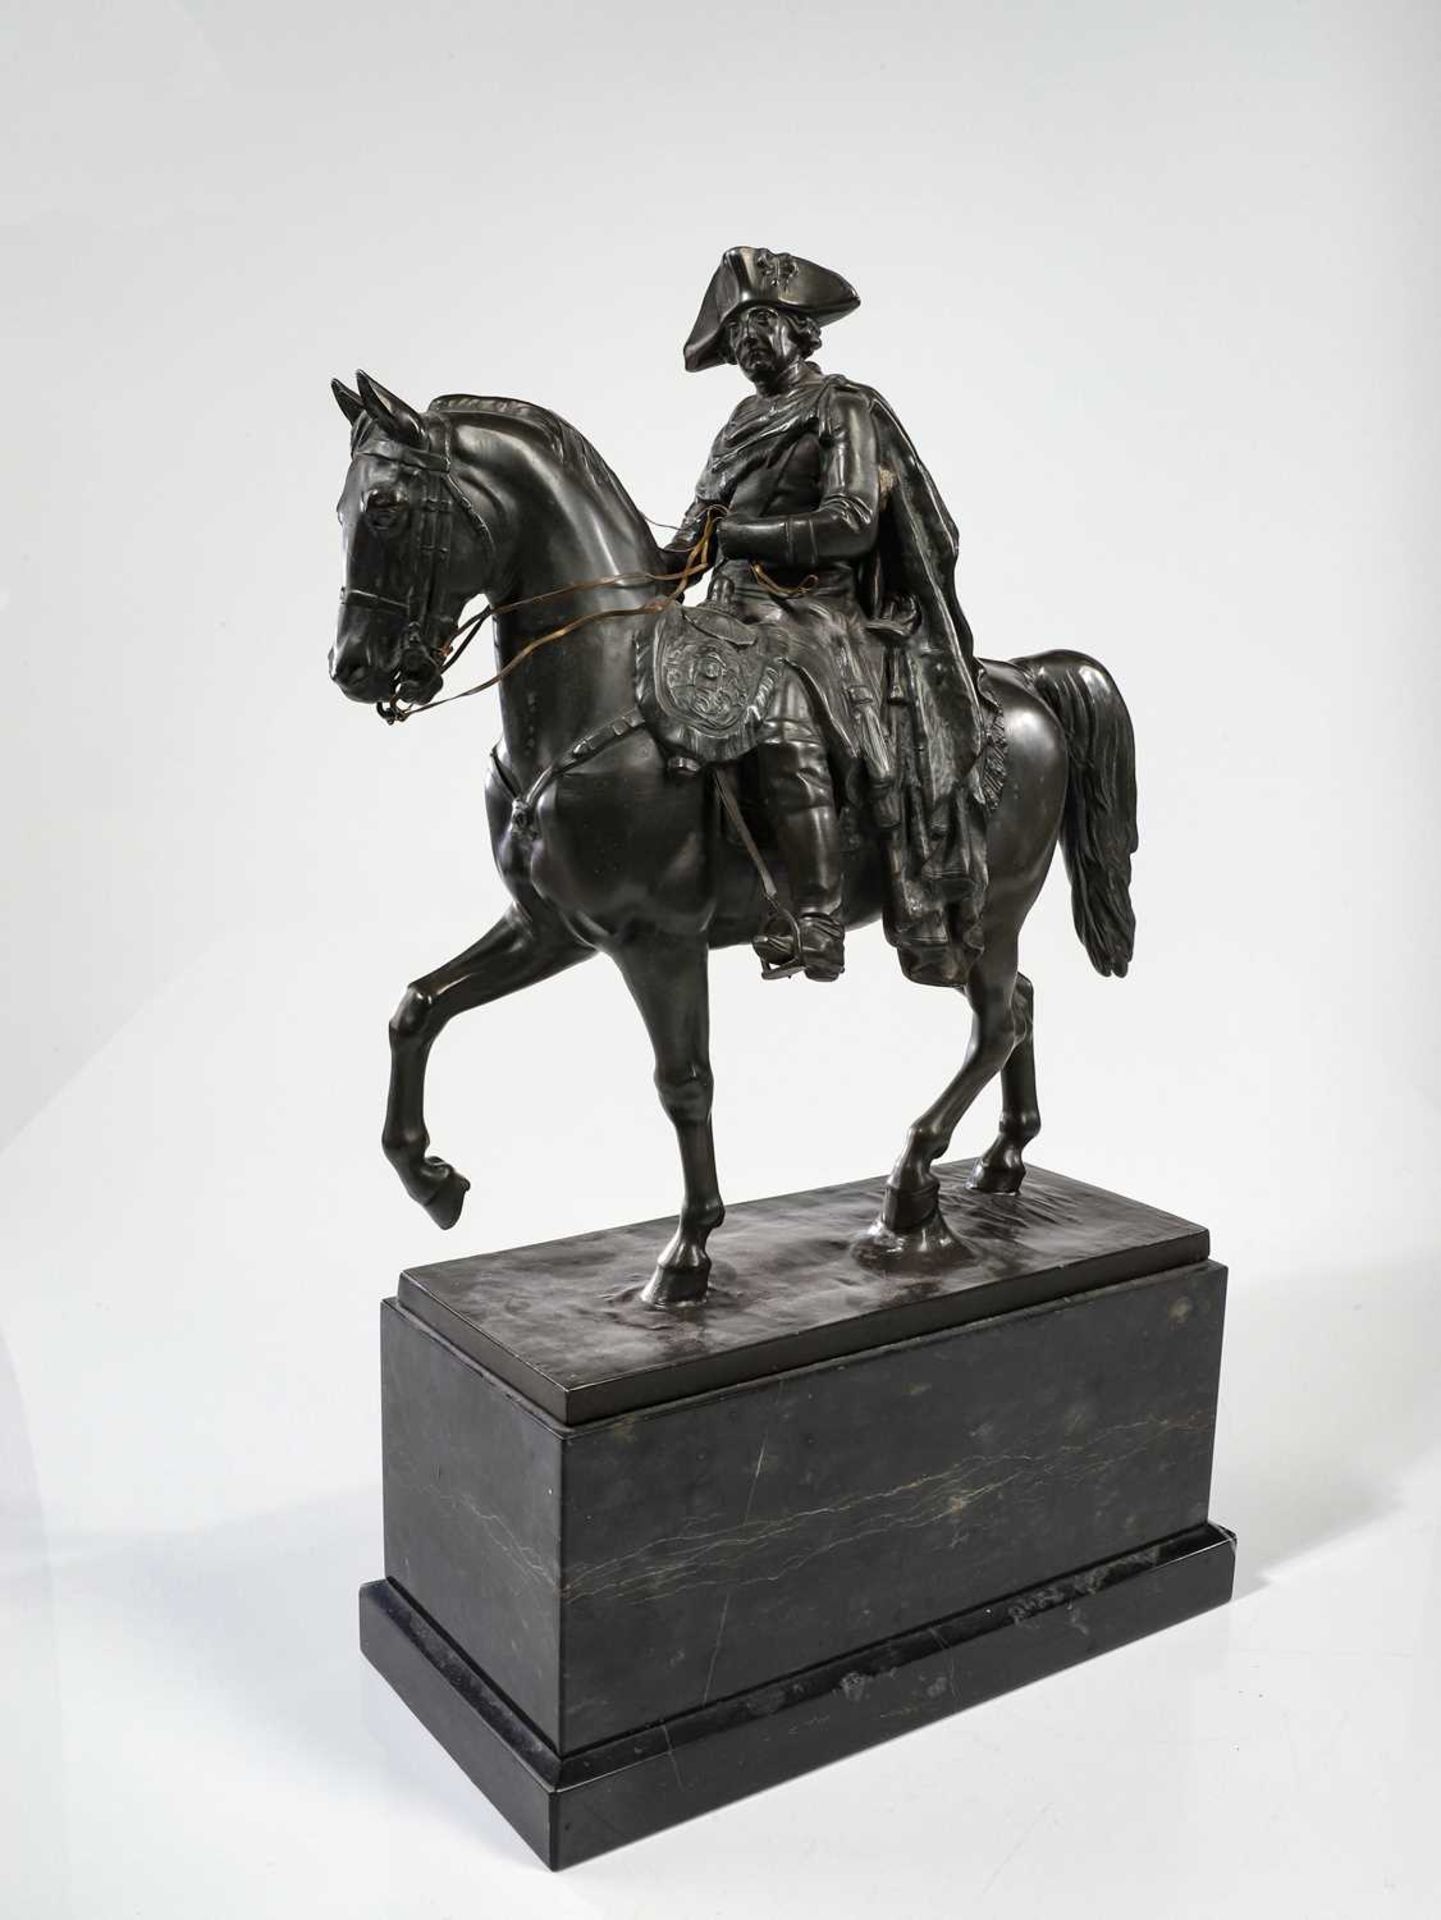 Skulptur von "Friedrich der Große" - Image 3 of 27